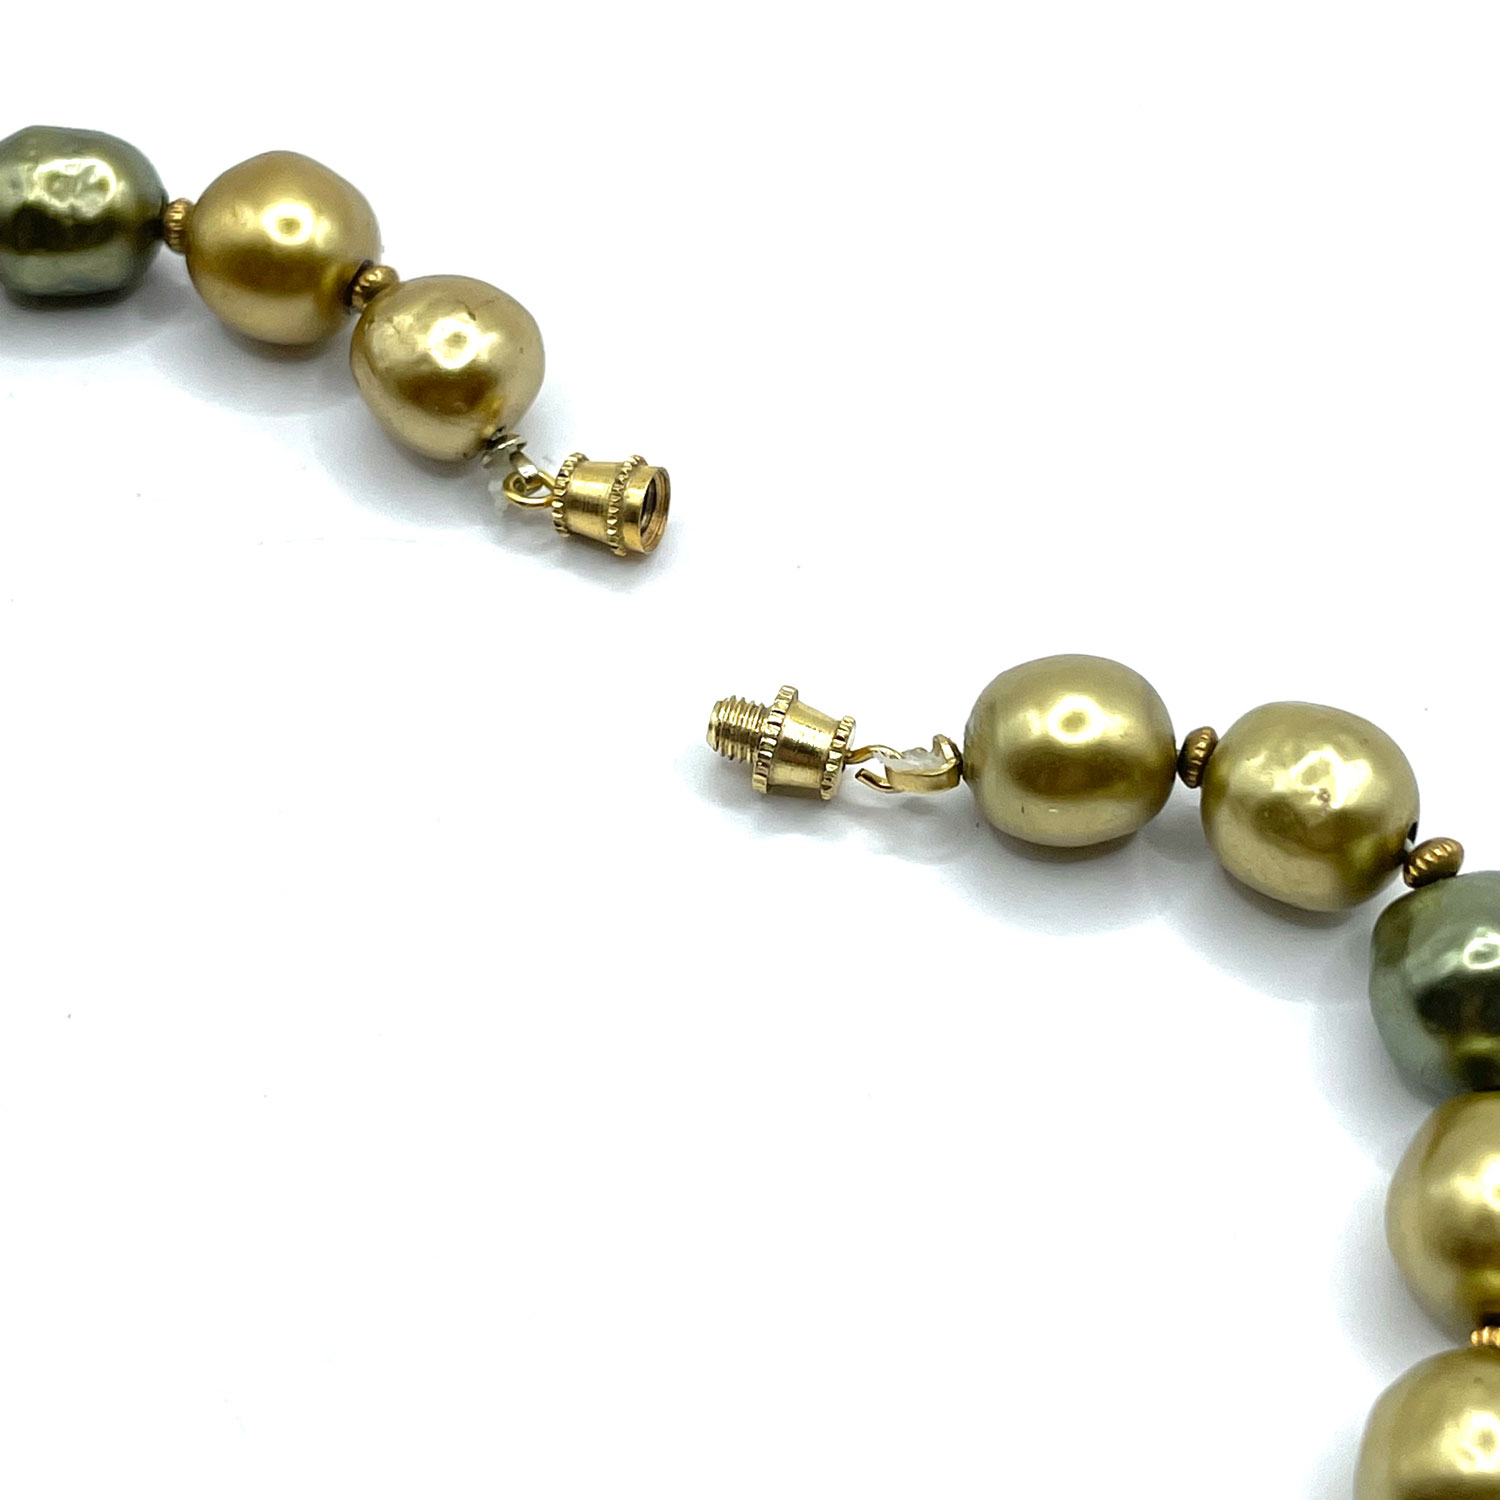 Baroque pearl bead necklace